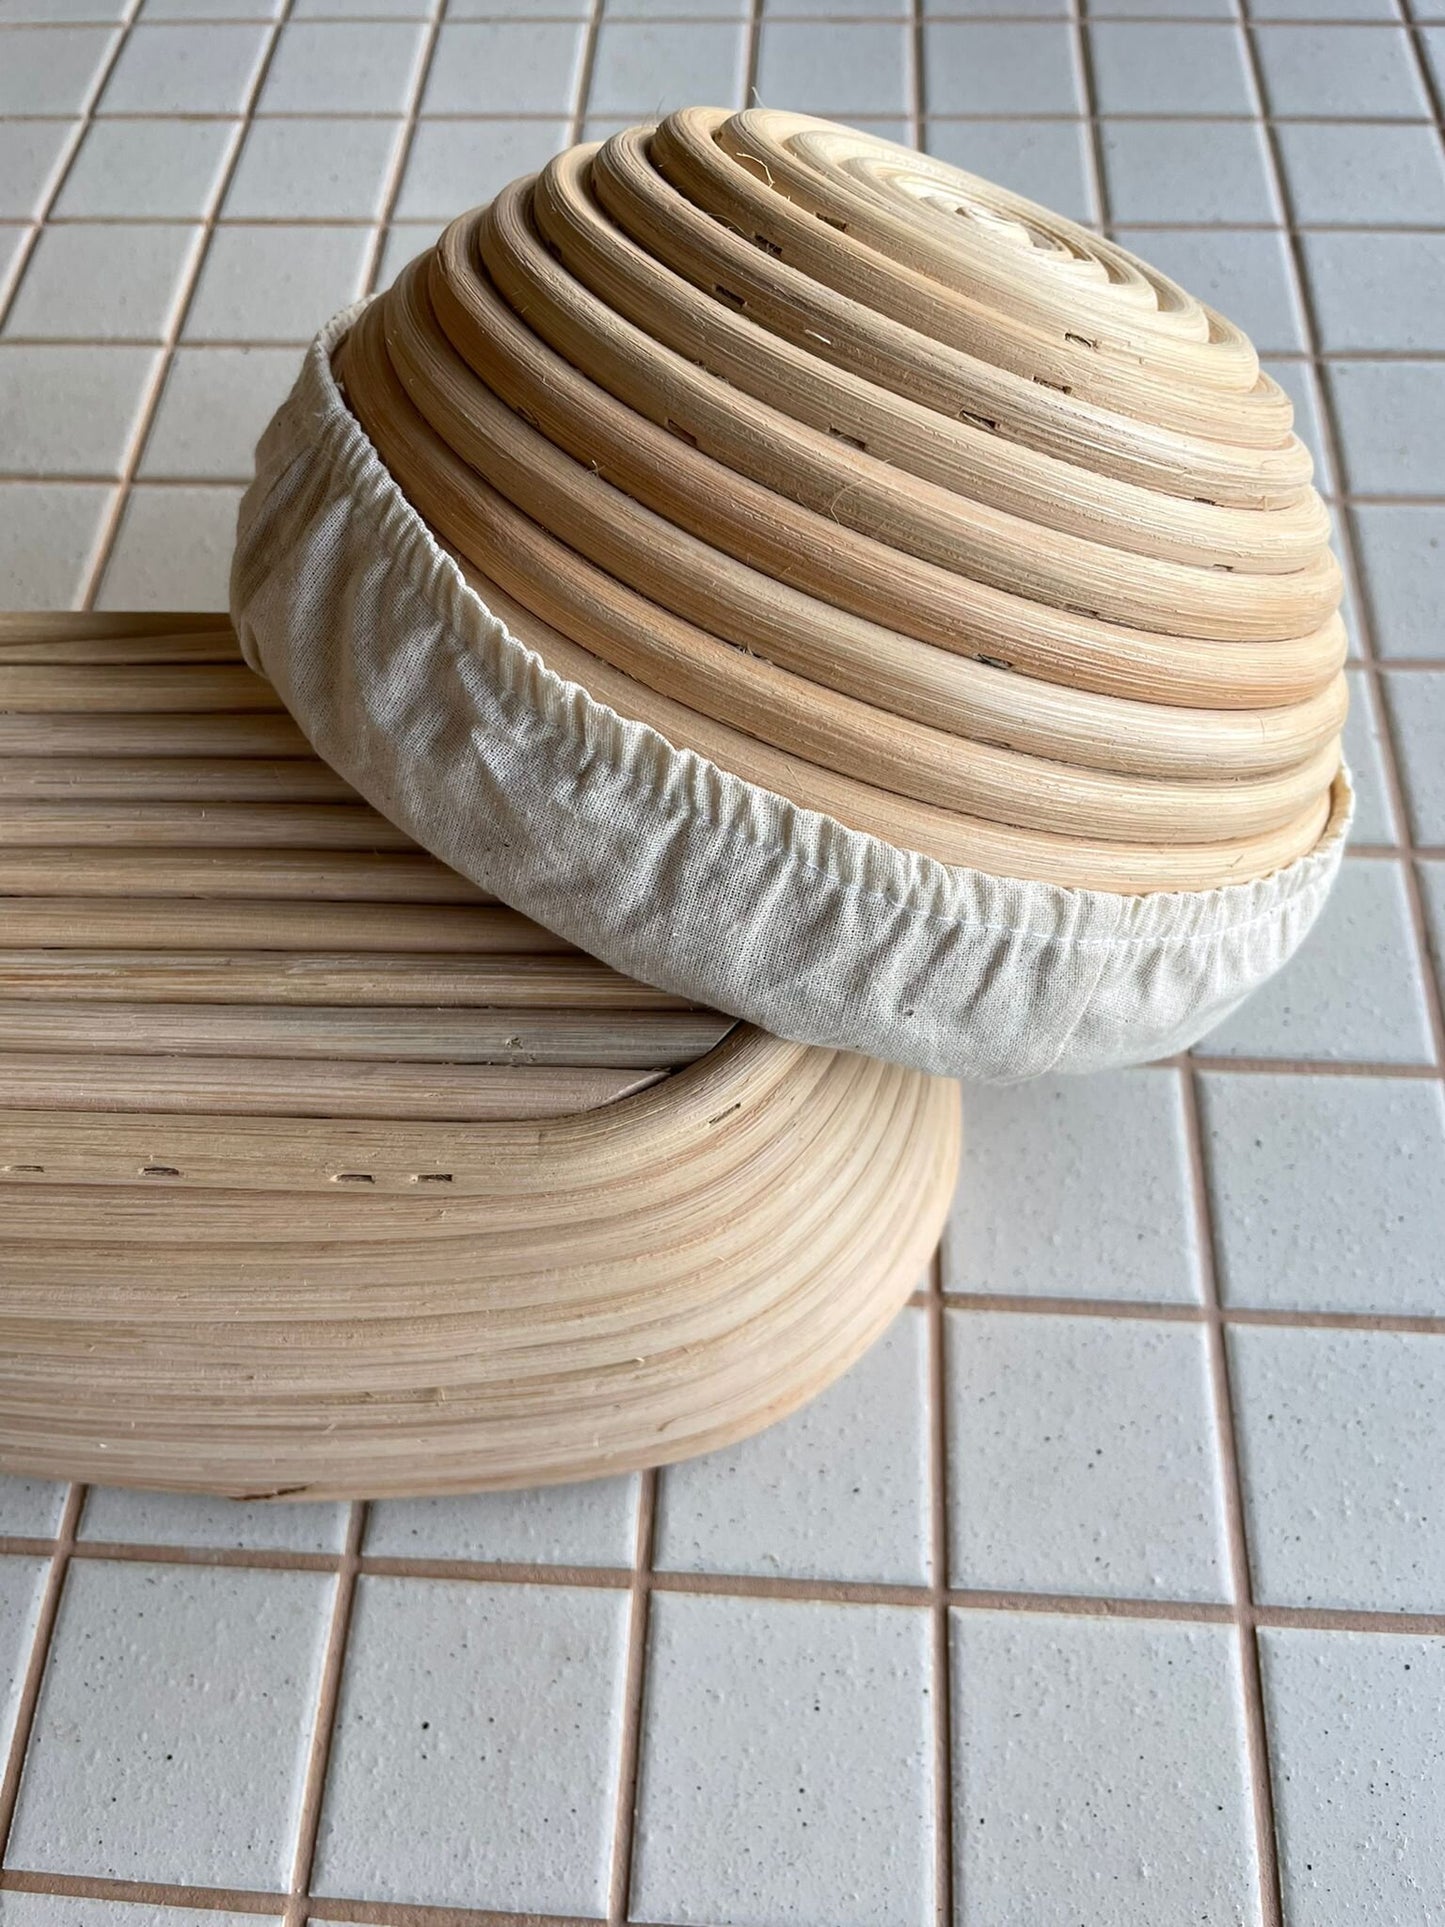 Liner for Bread Proving Basket/Banneton